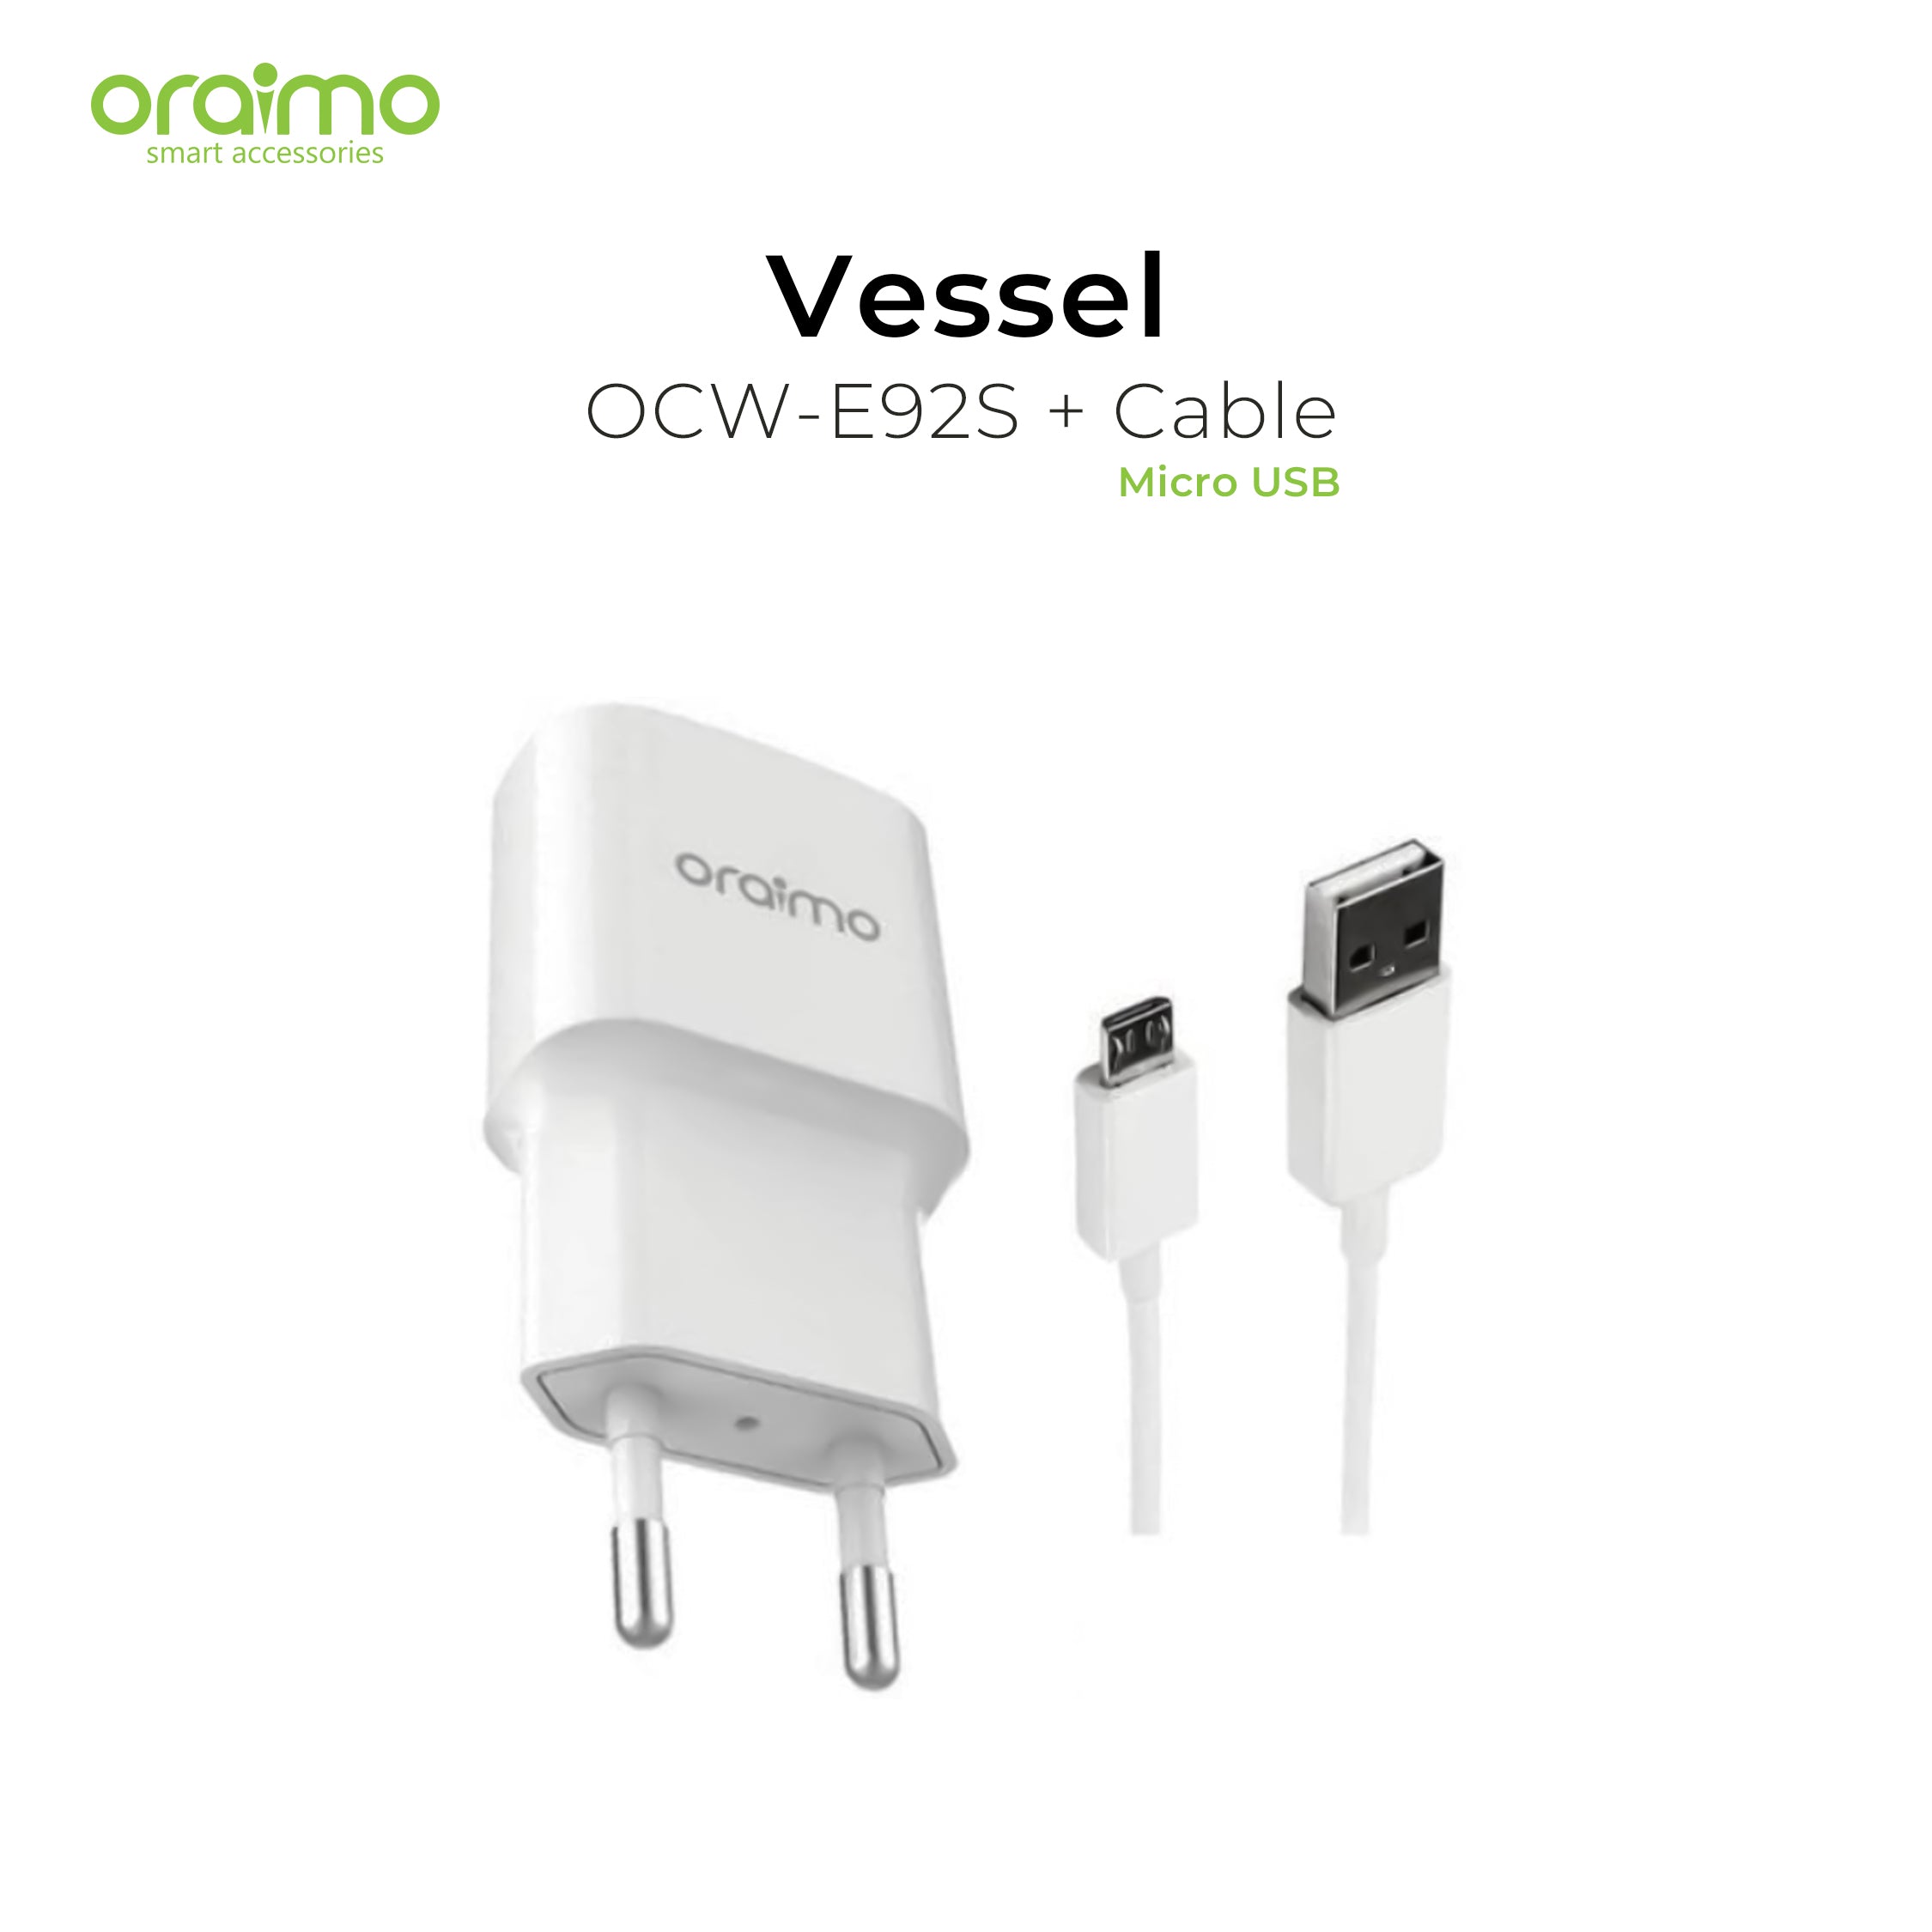 Oraimo Vessel Charger OCW-E92S + Micro USB Cable